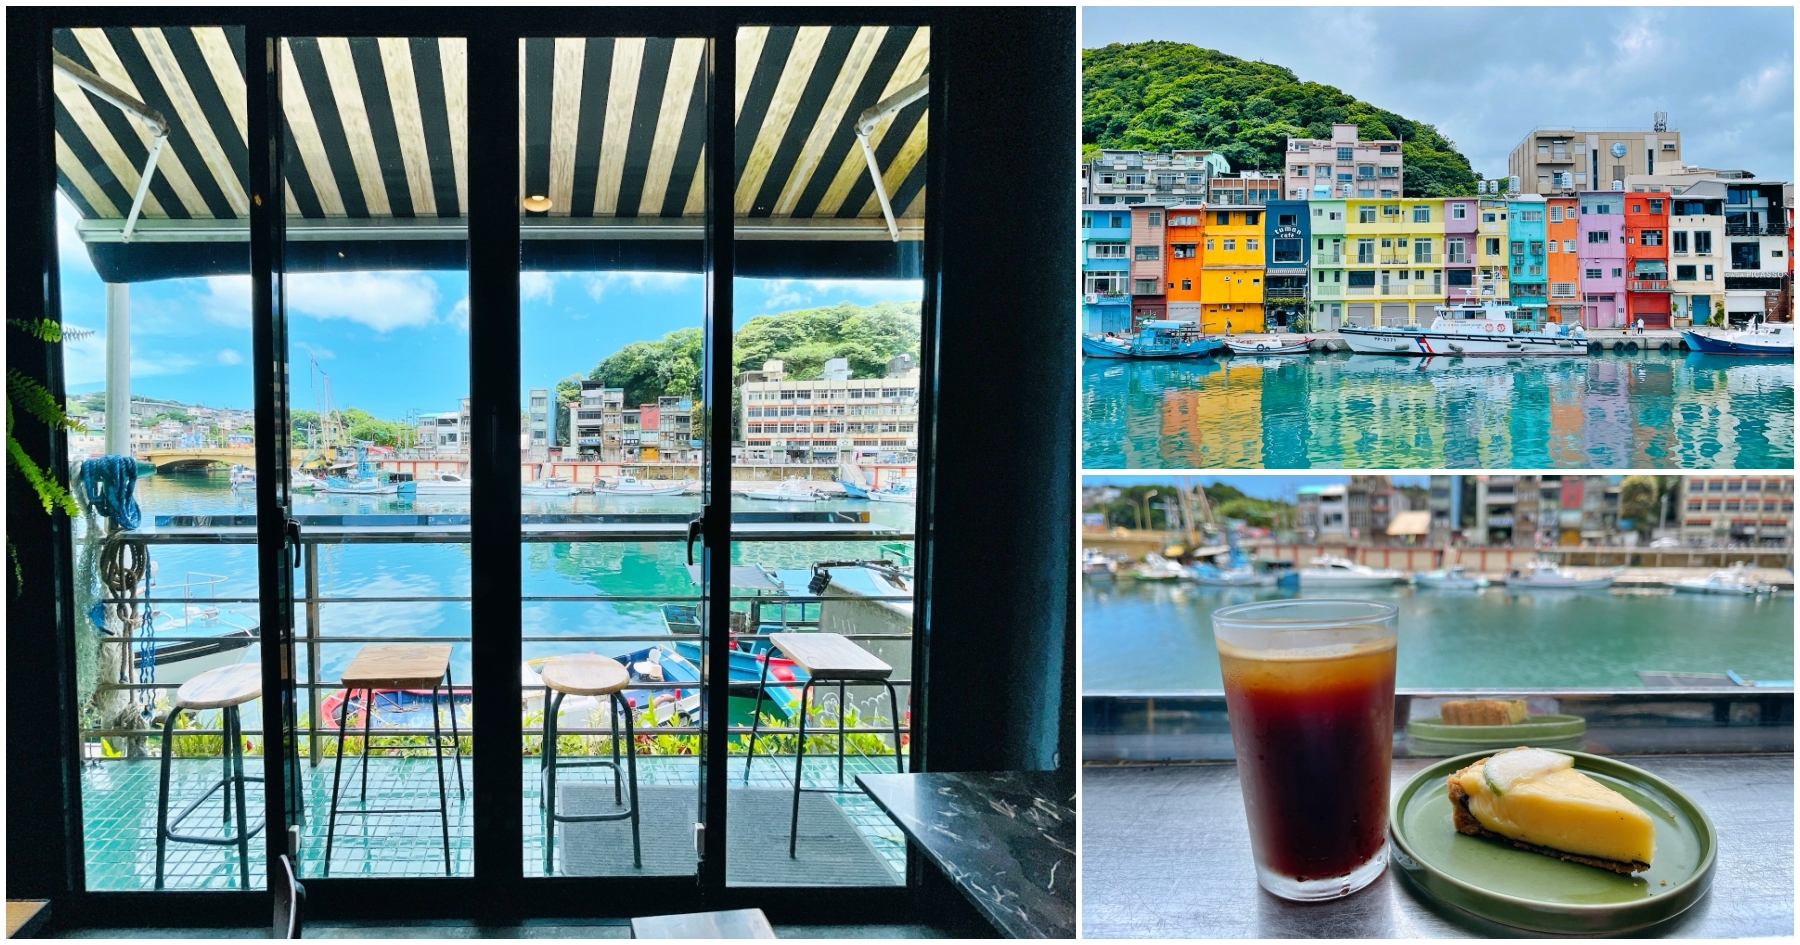 [基隆美食]圖們咖啡 tuman café|正濱漁港五彩繽紛的黑色建築~藍天綠海美景映眼前 @VIVIYU小世界